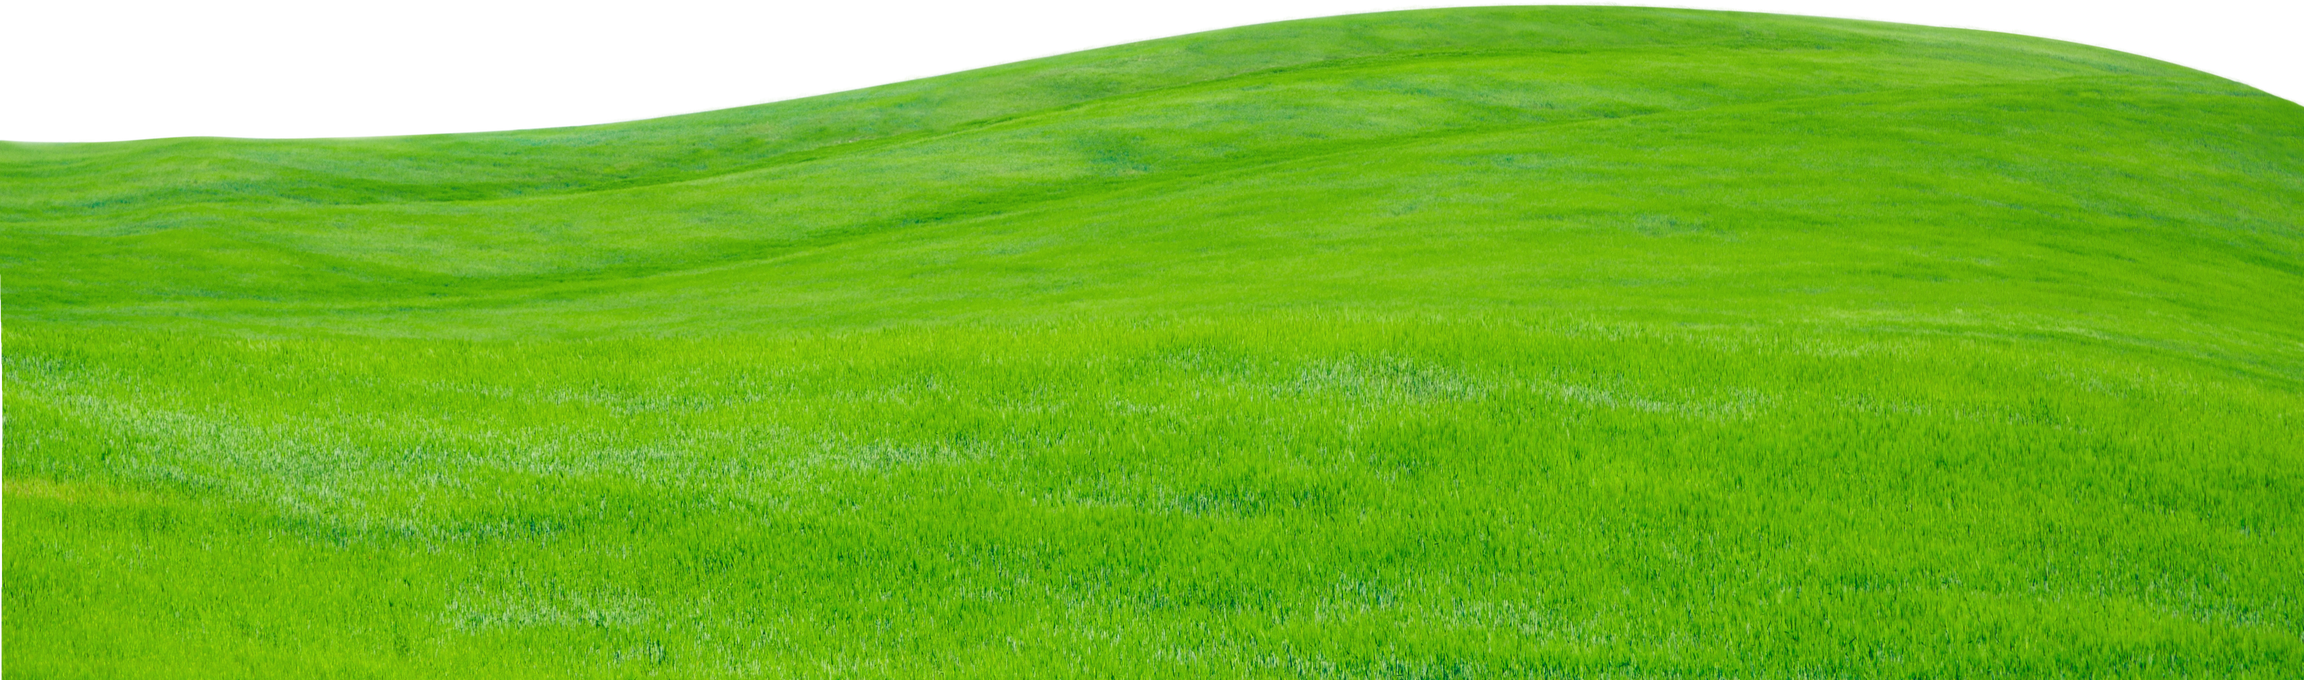 Green Grass Texture 